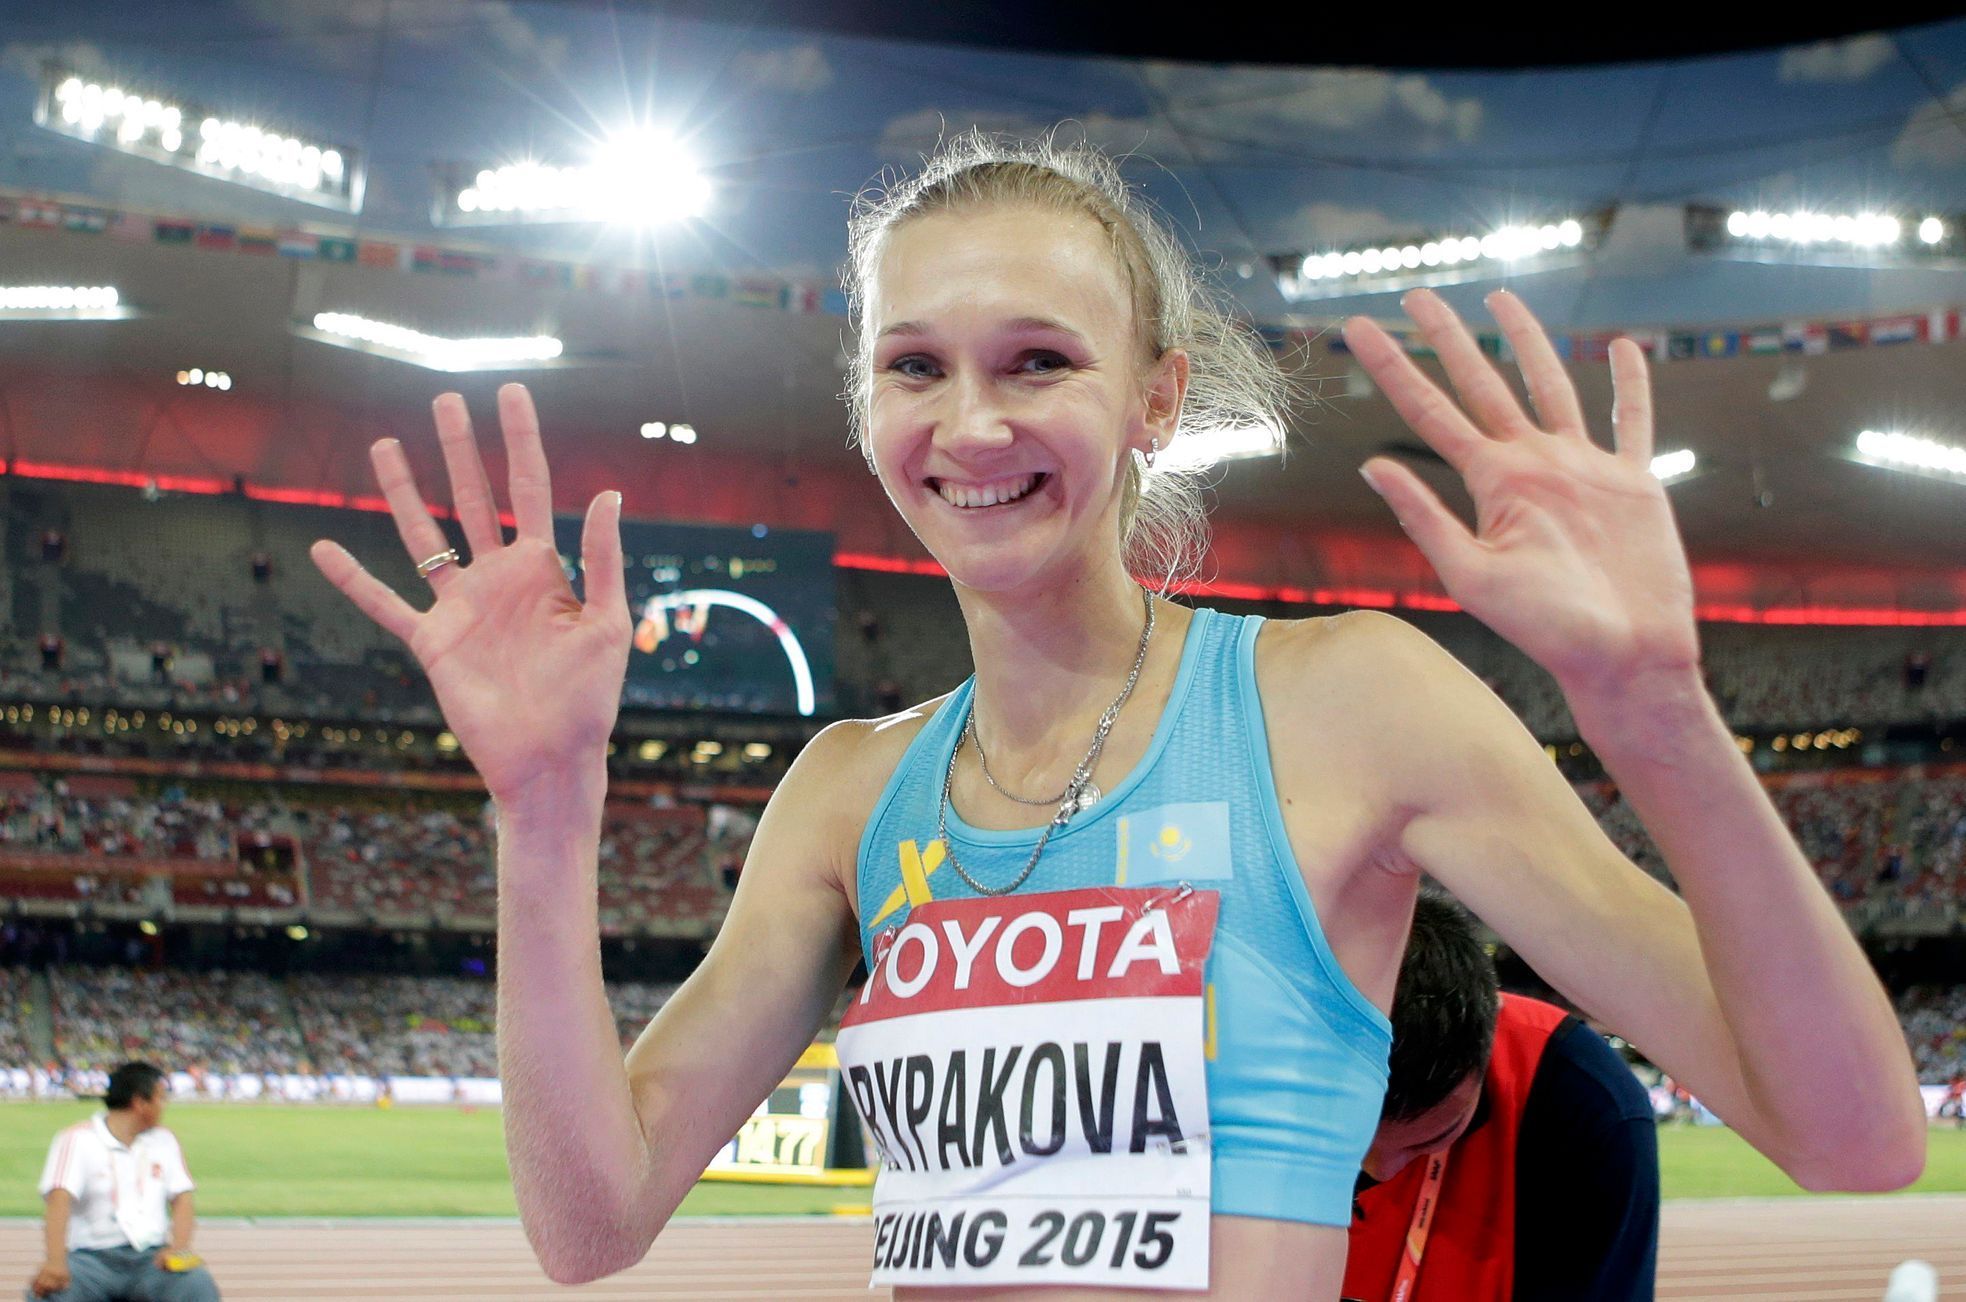 MS v atletice 2015, trojskok: Olga Rypaková